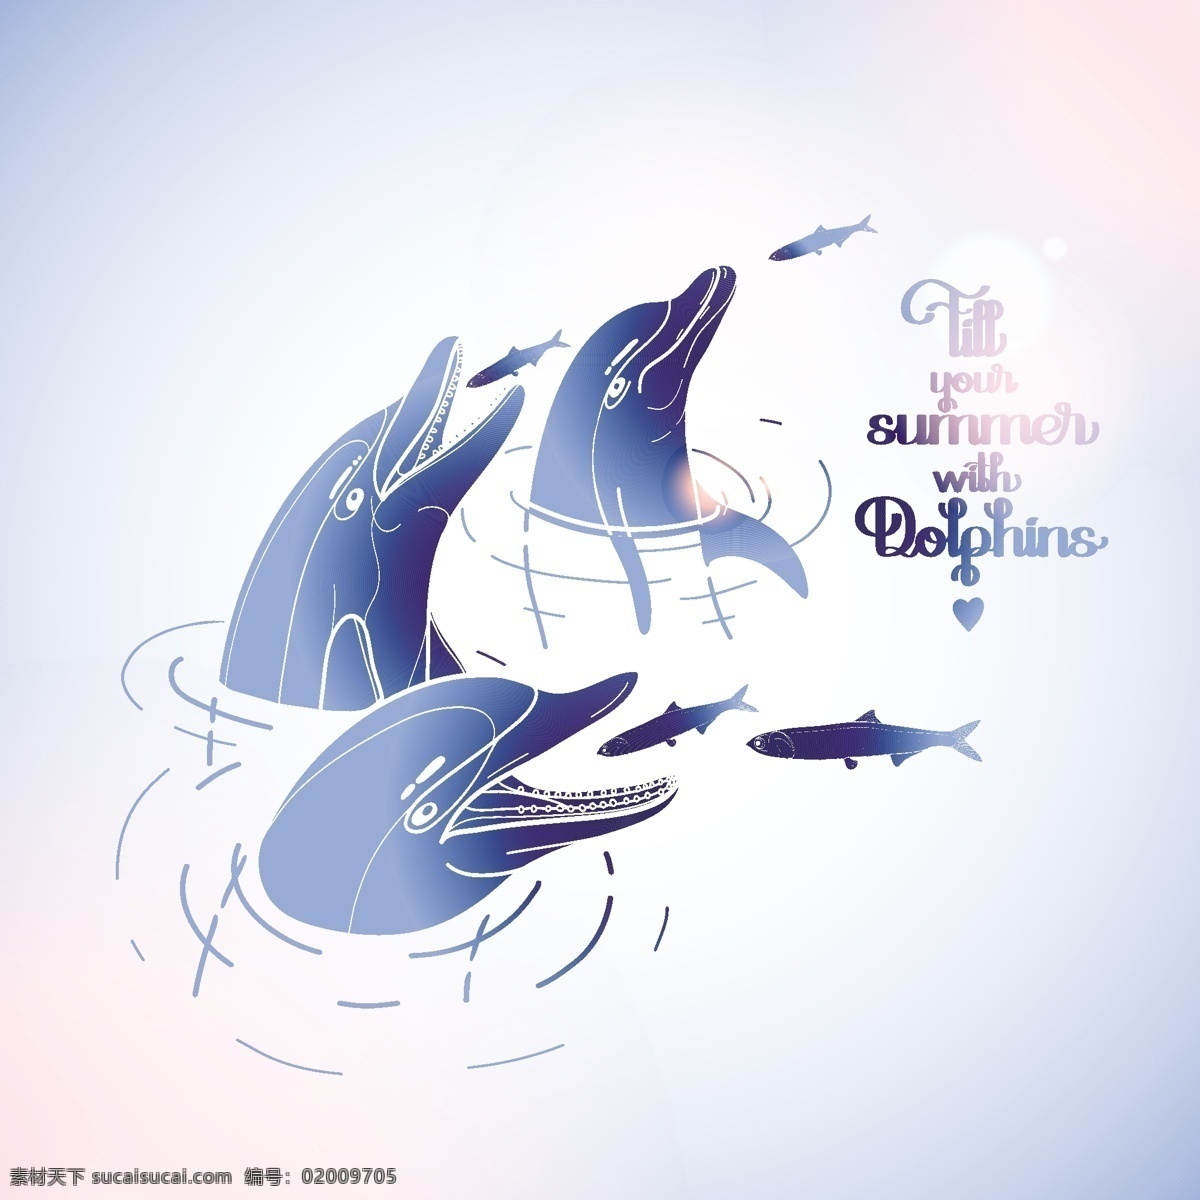 夏日 海豚 矢量 梦幻 浪漫 创意 涂鸦 小清新 卡通 填充 插画 背景 海报 广告 包装 印刷 夏天